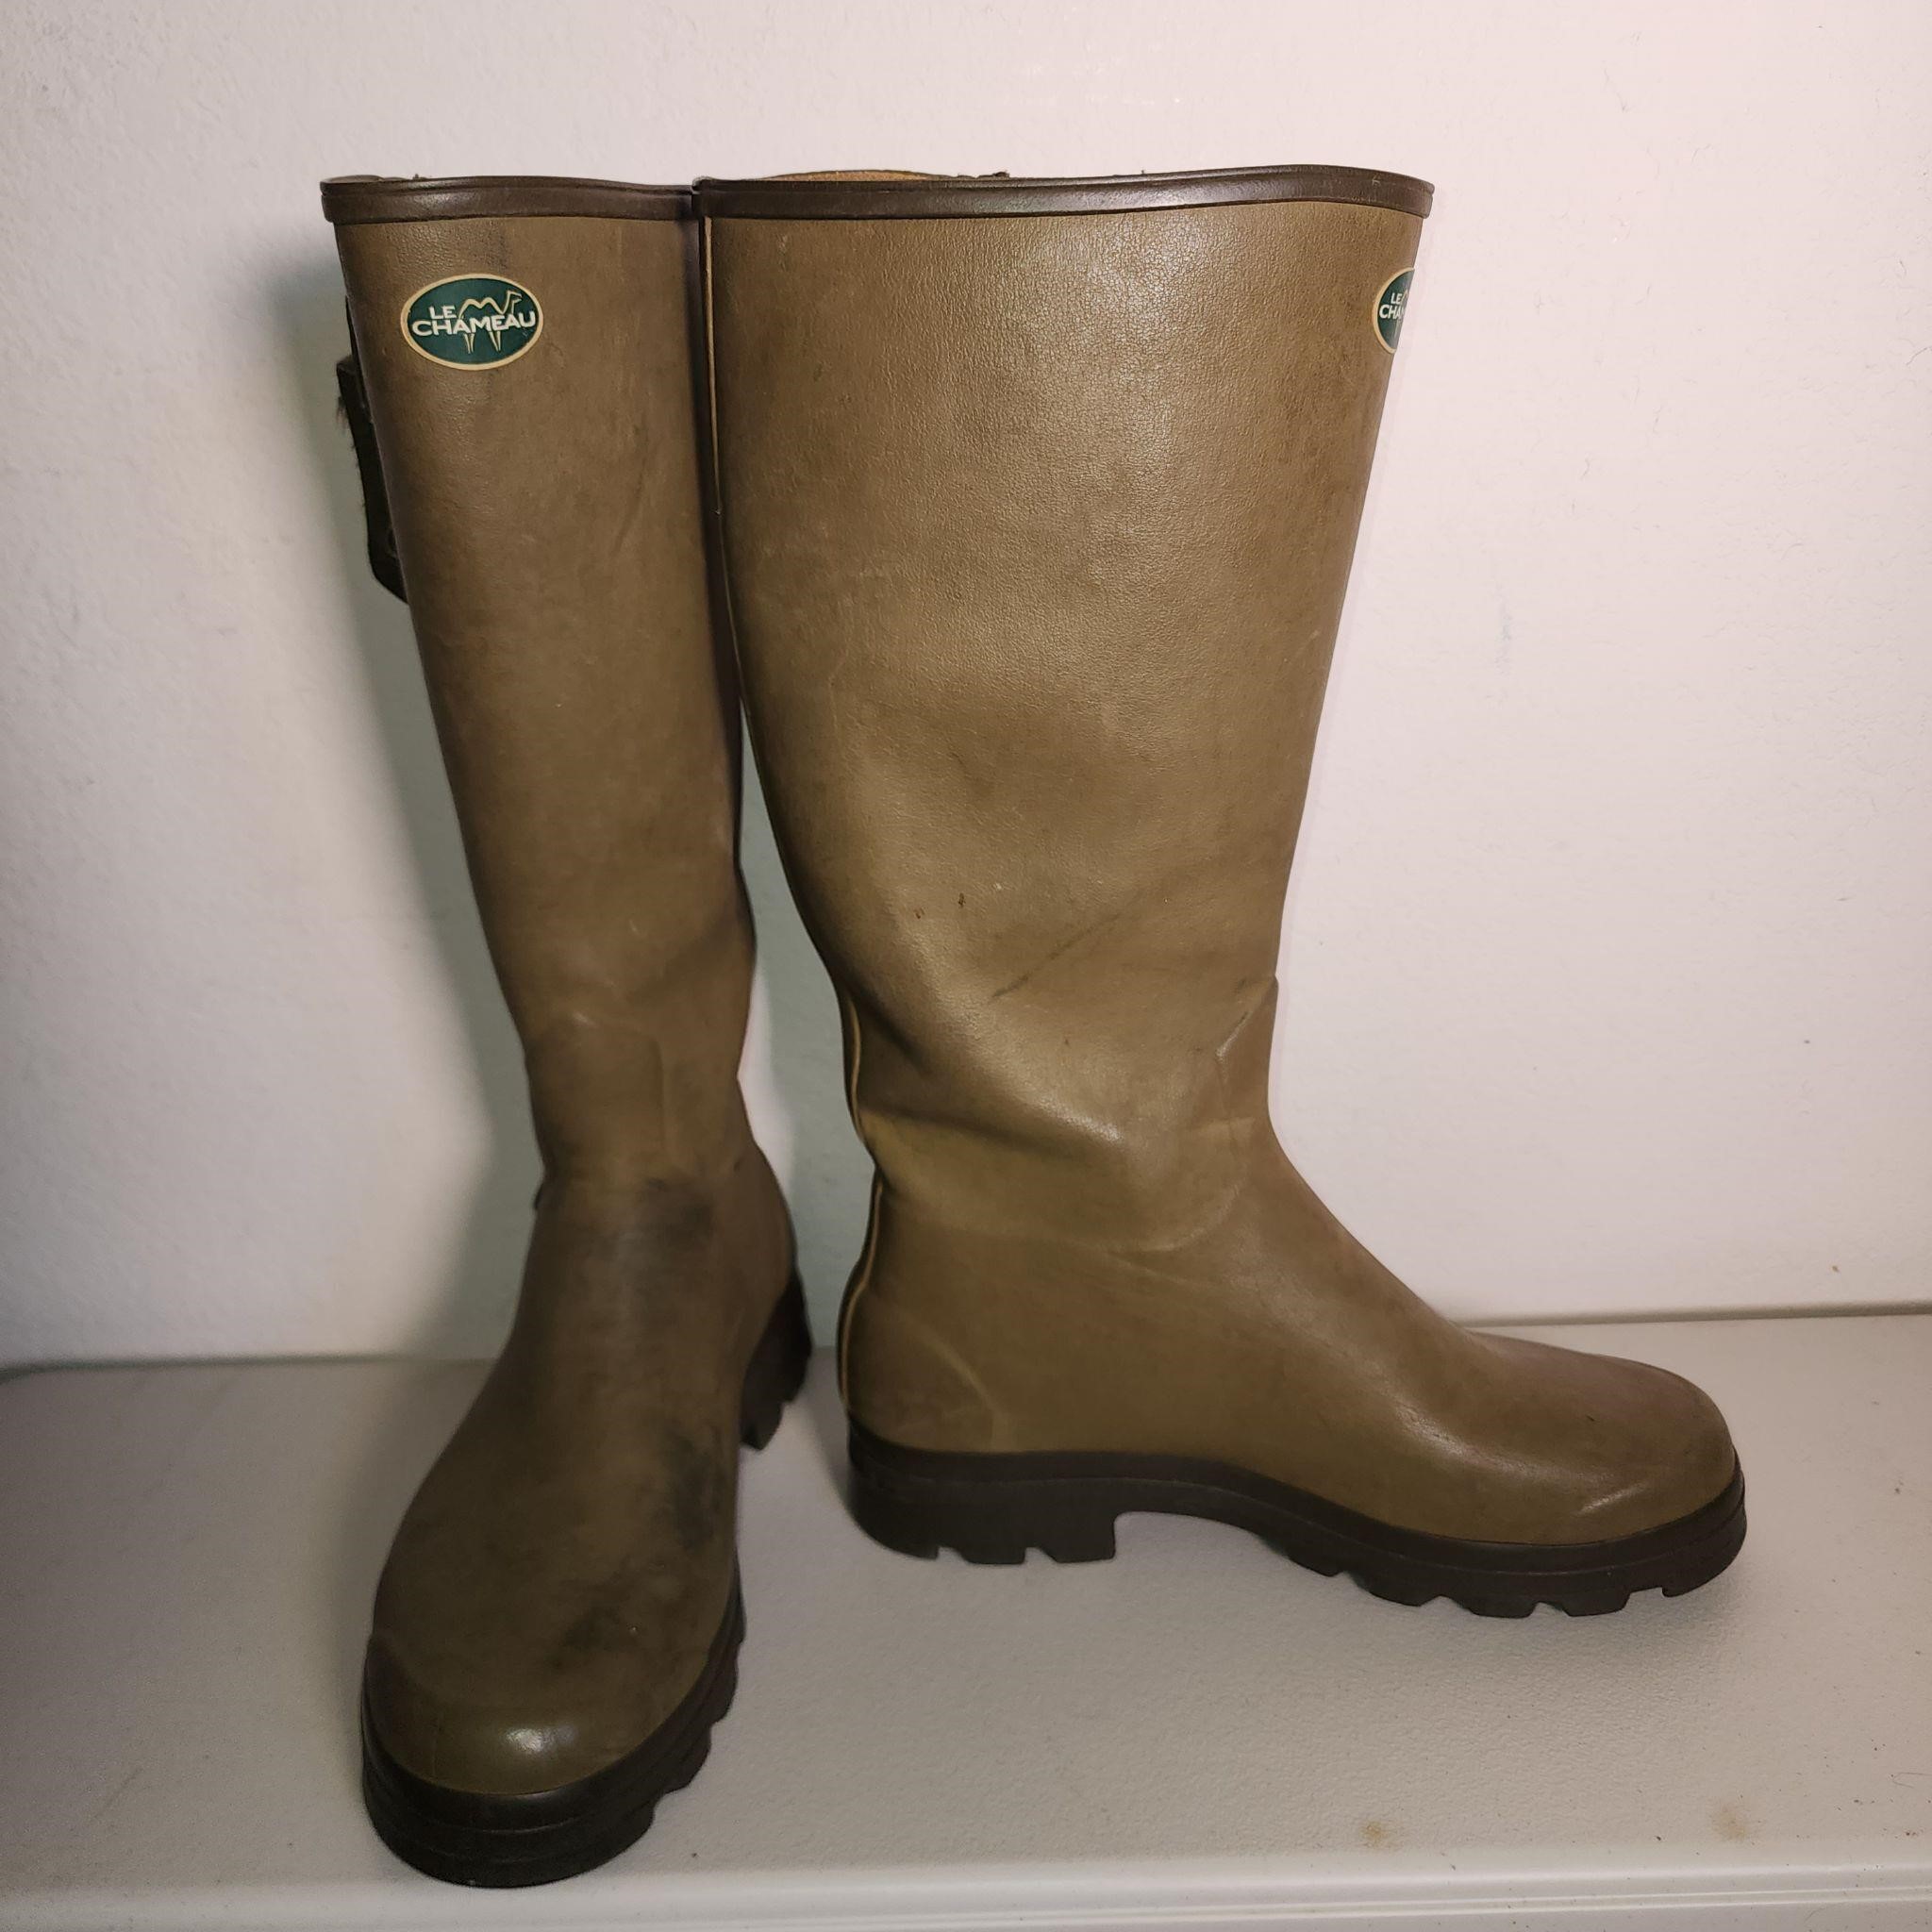 Le Chameau Rain Boots; French, Sz 46